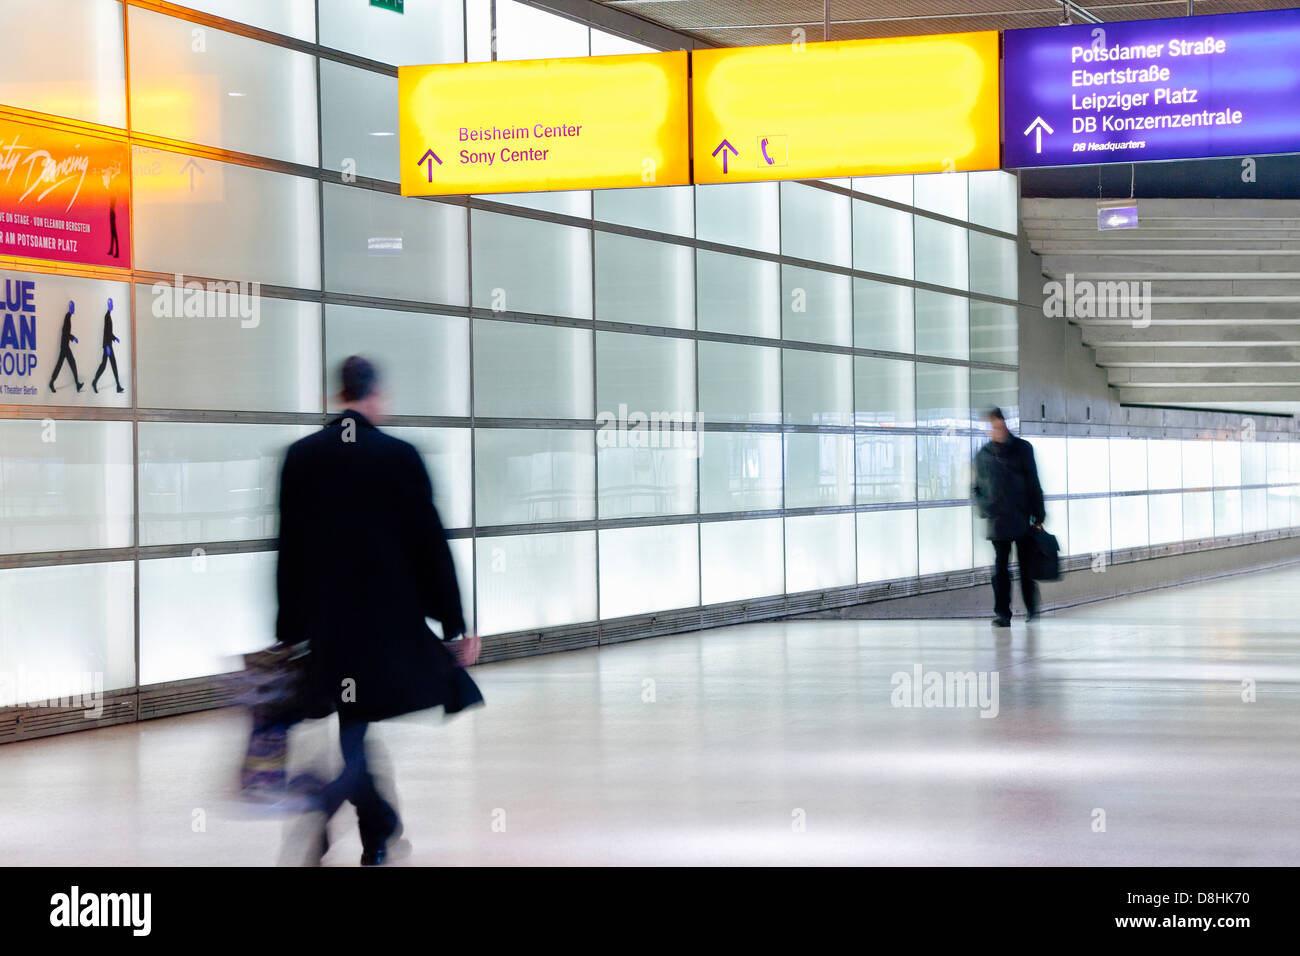 L'Europa, Germania, Berlino, stazione ferroviaria moderna passaggio - la gente camminare con motion blur Foto Stock